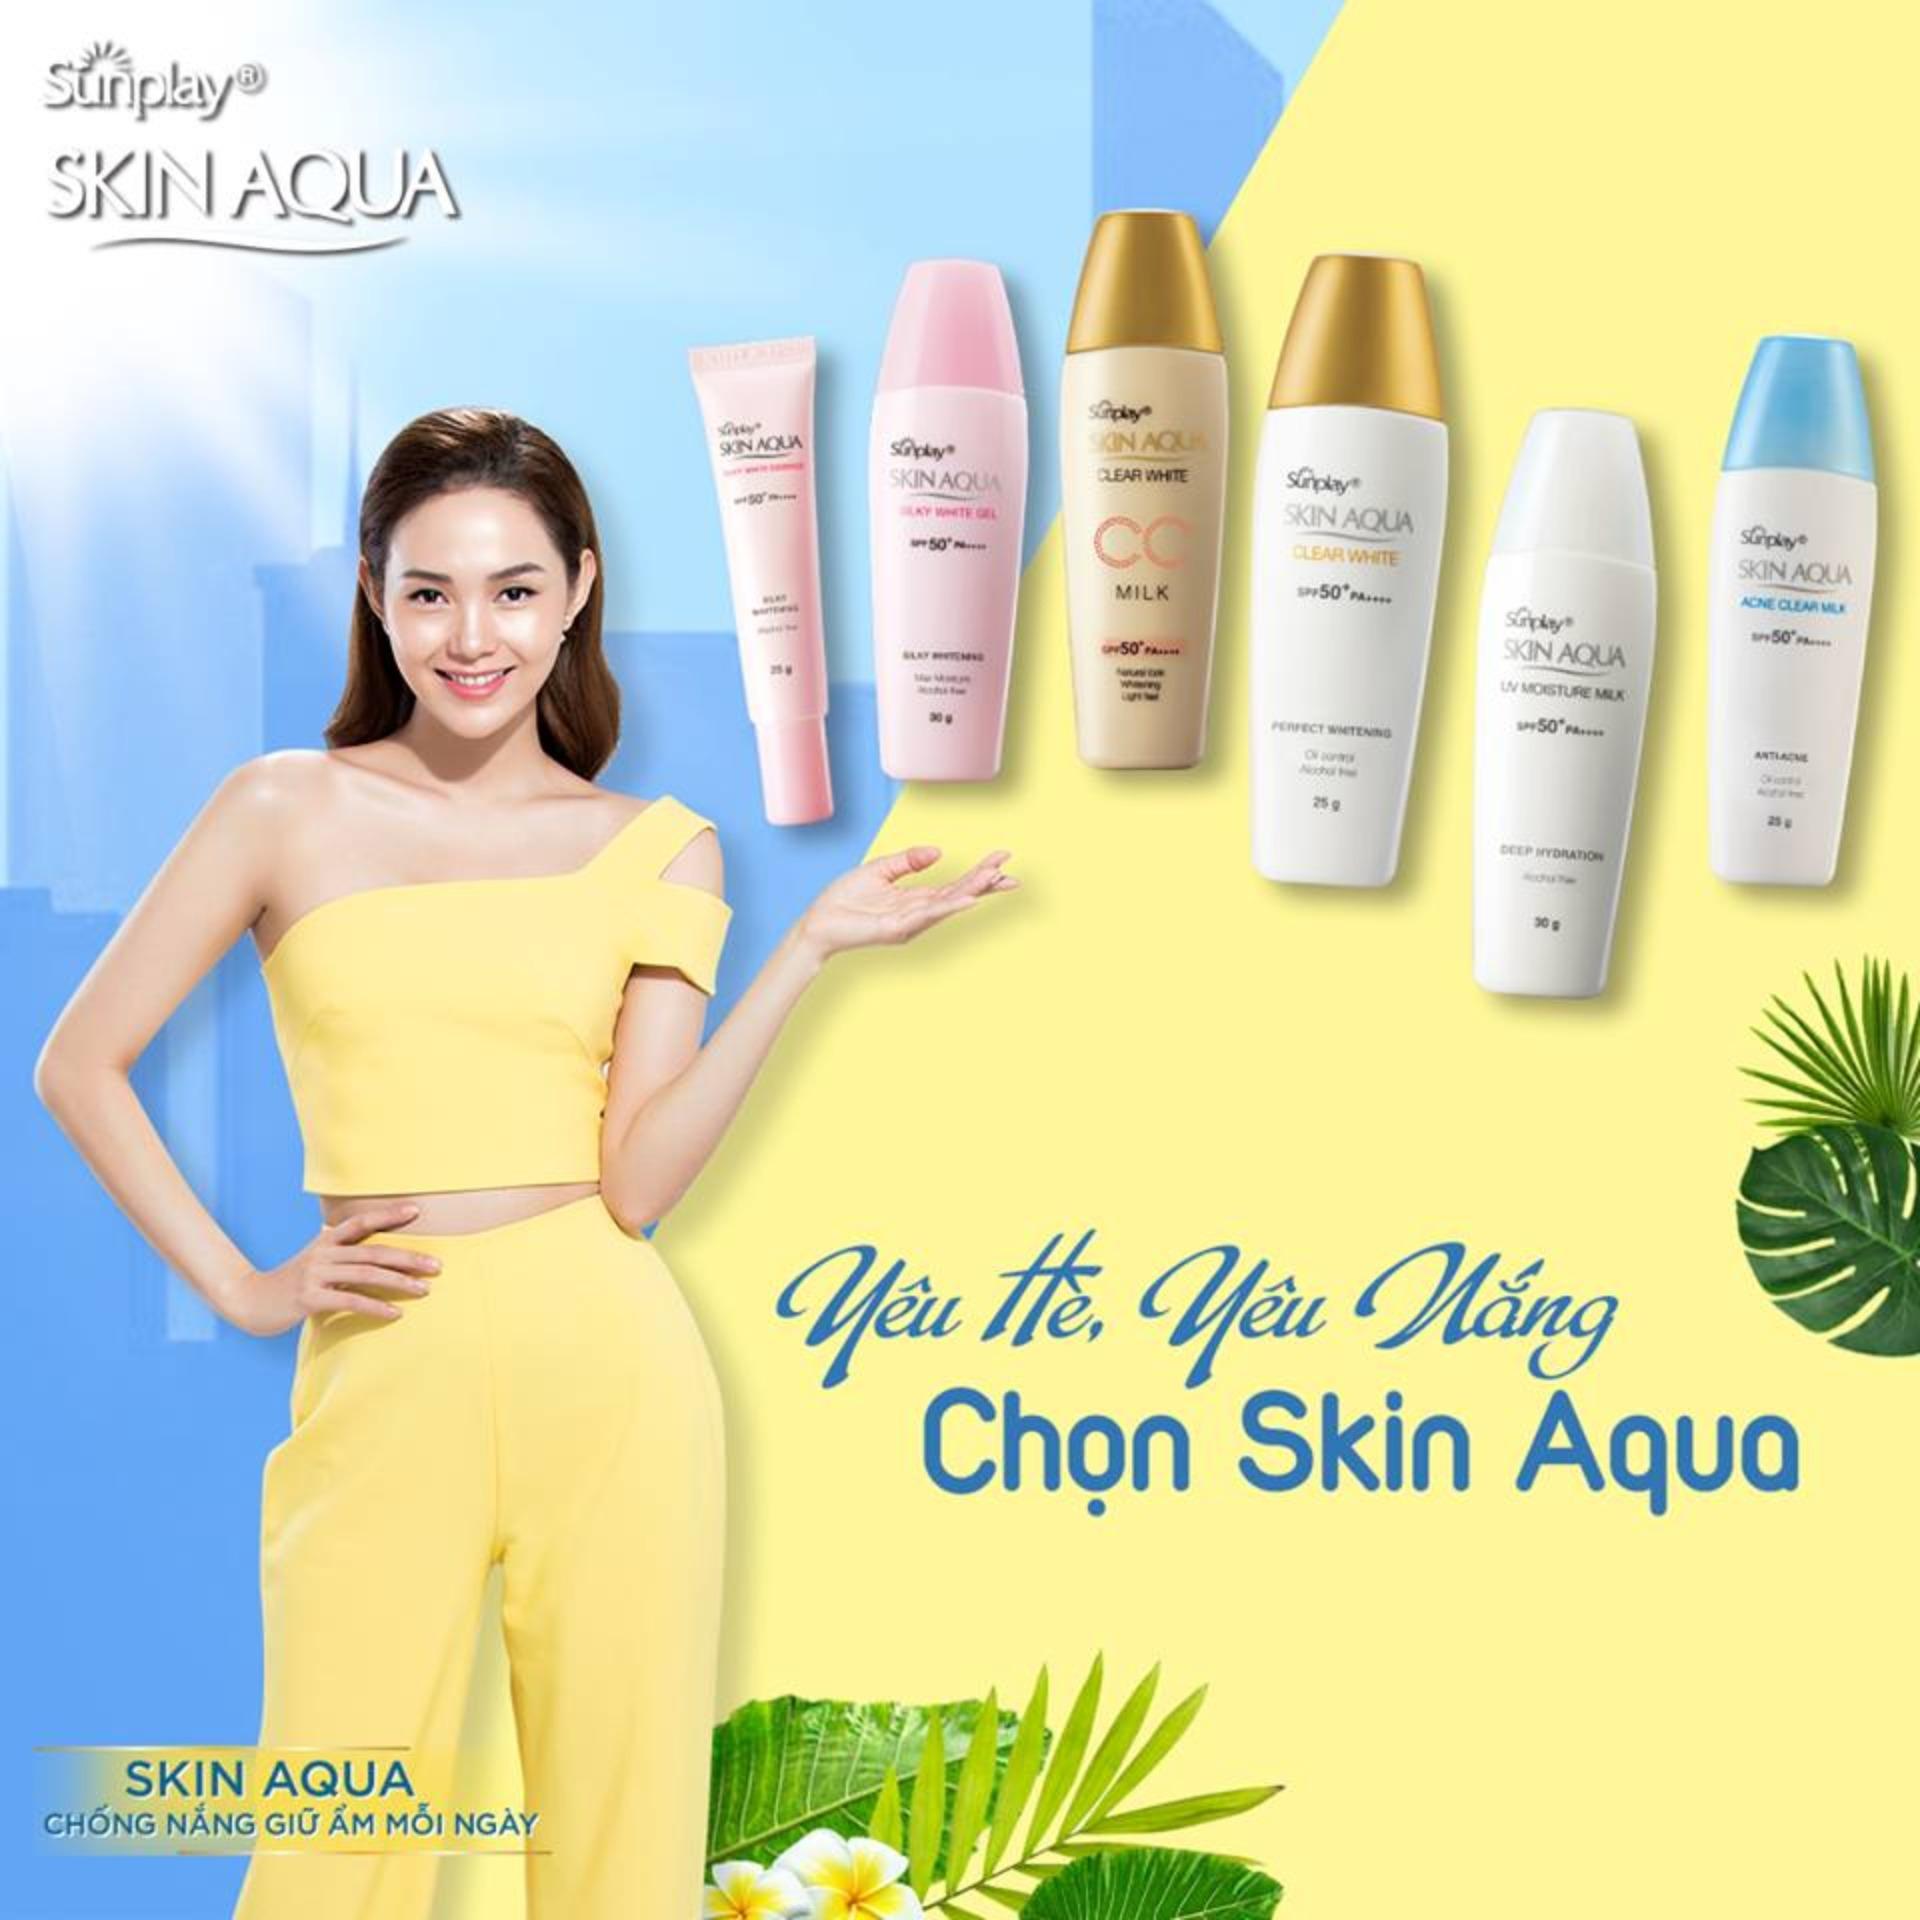 Gel chống nắng dưỡng da trắng mượt Sunplay Skin Aqua Silky White Gel SPF 50+ PA++++ 30g + Tặng Kem...